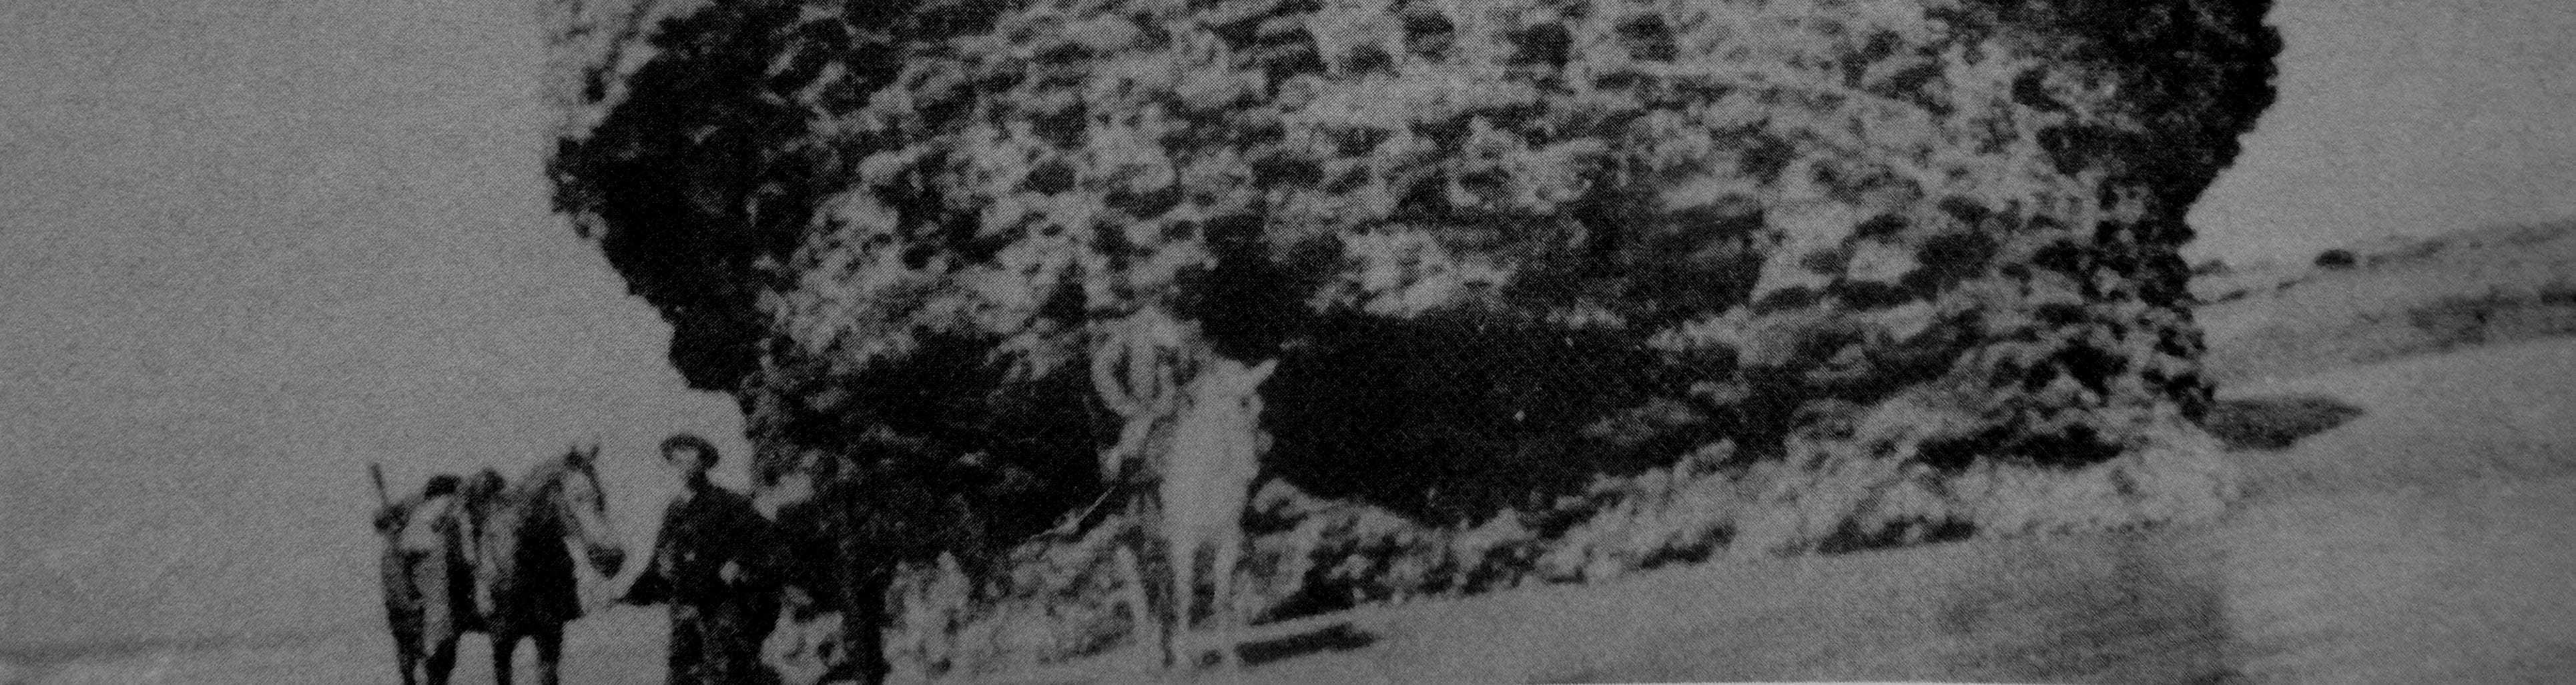 Fotografía de la Torre de La Higuera, más conocida como tapón o peña de Matalascañas, tomada en 1941